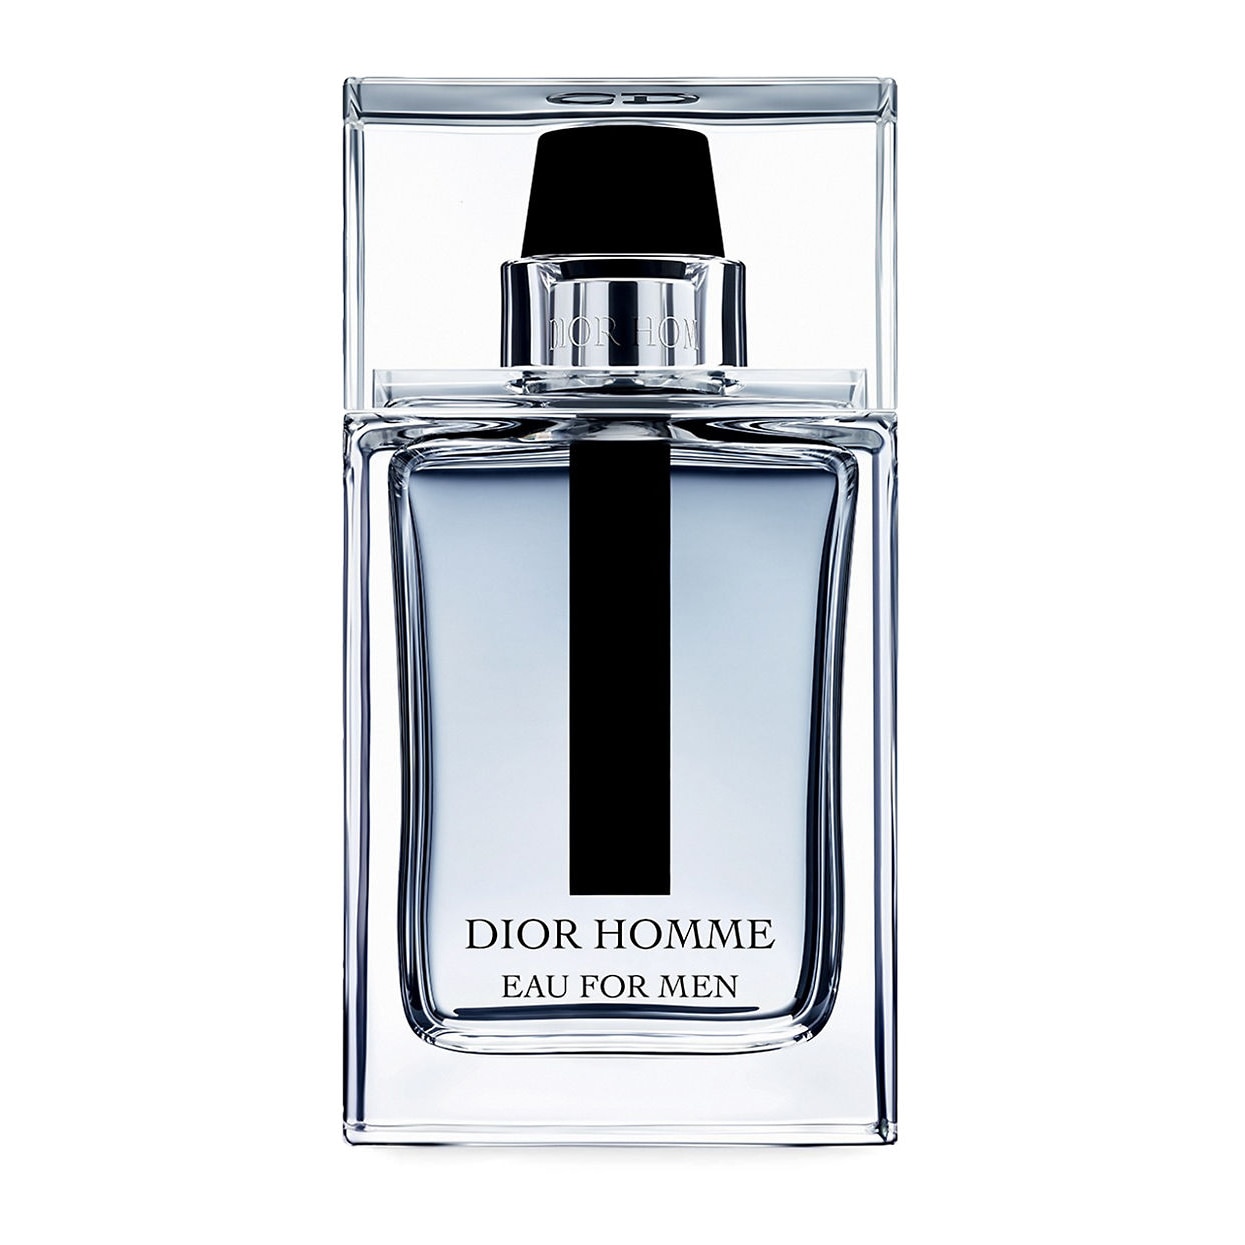 Dior homme купить мужской. Christian Dior homme Eau for men. Dior homme 2020 Christian Dior. Christian Dior Dior homme EDT 100ml. Christian Dior homme, 100 ml.